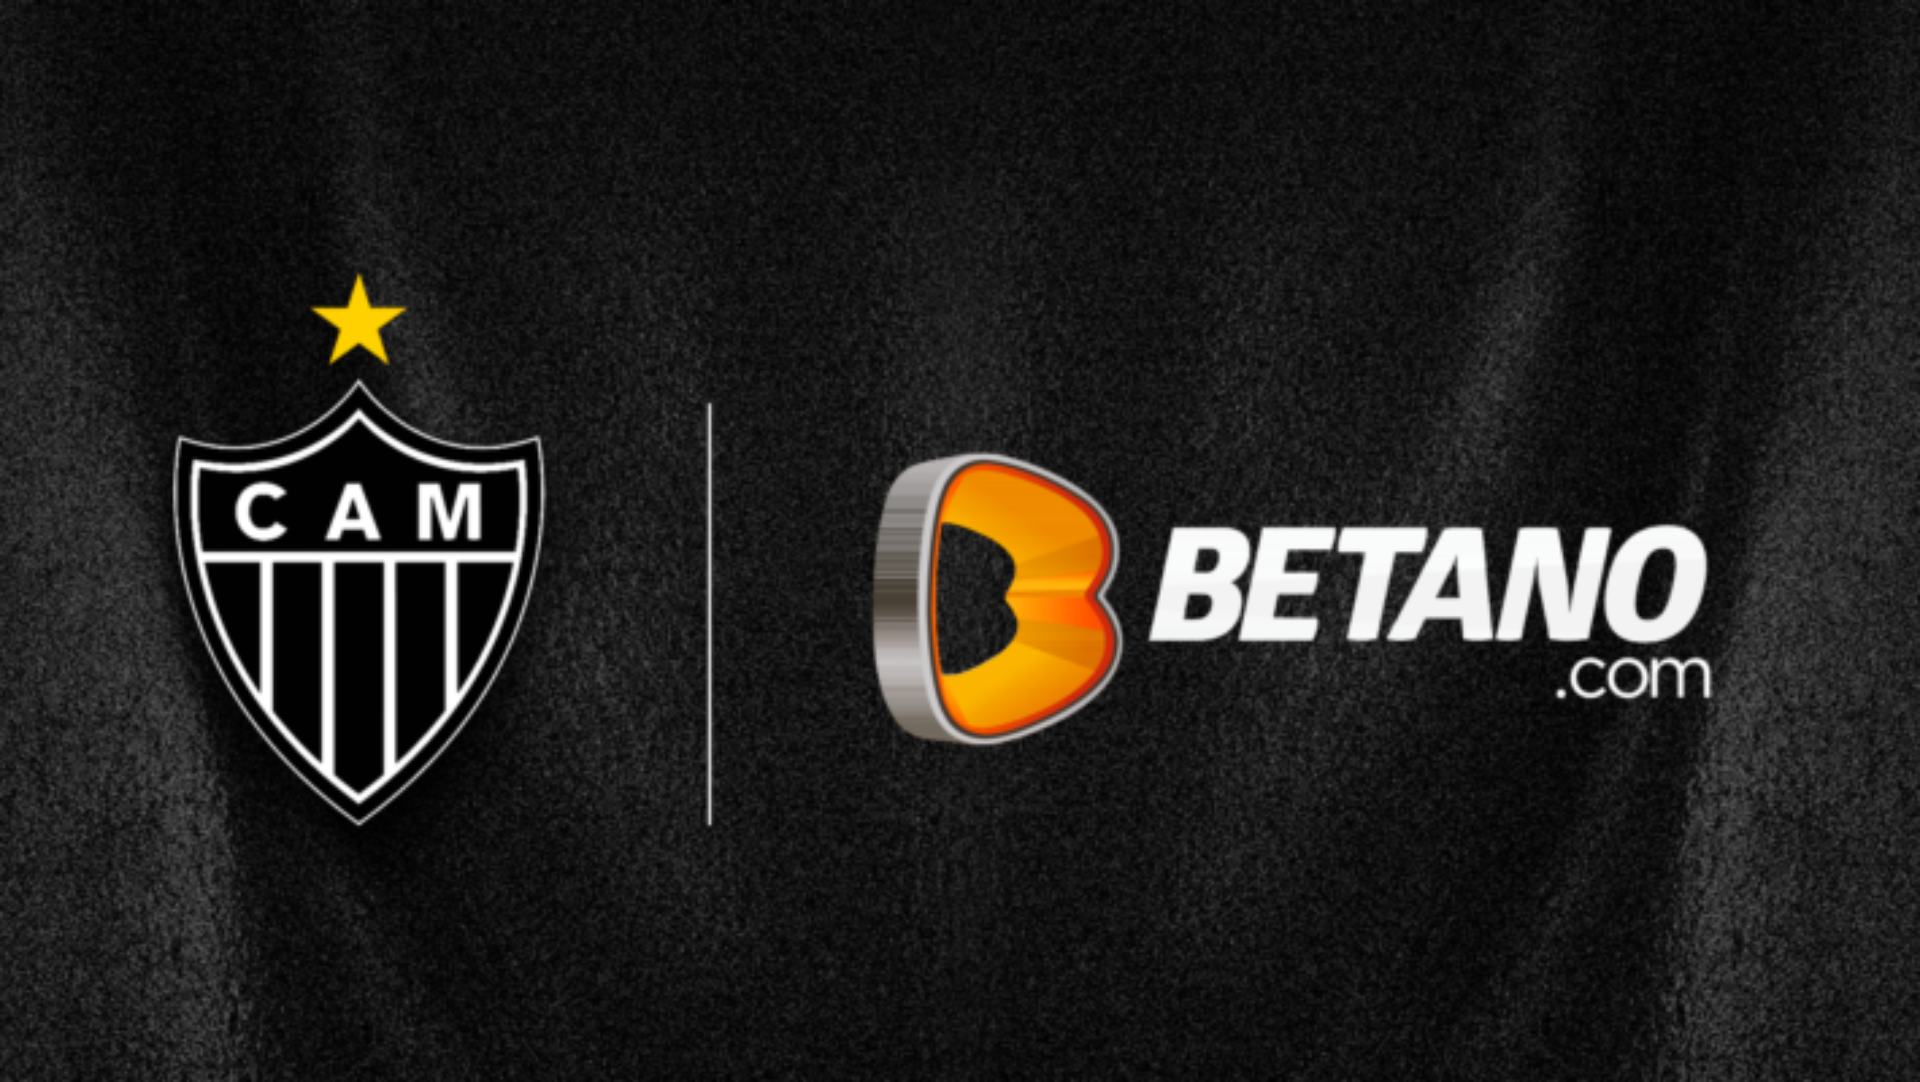 Atlético Mineiro renovou contrato de patrocínio máster com a Betano até final de 2024.